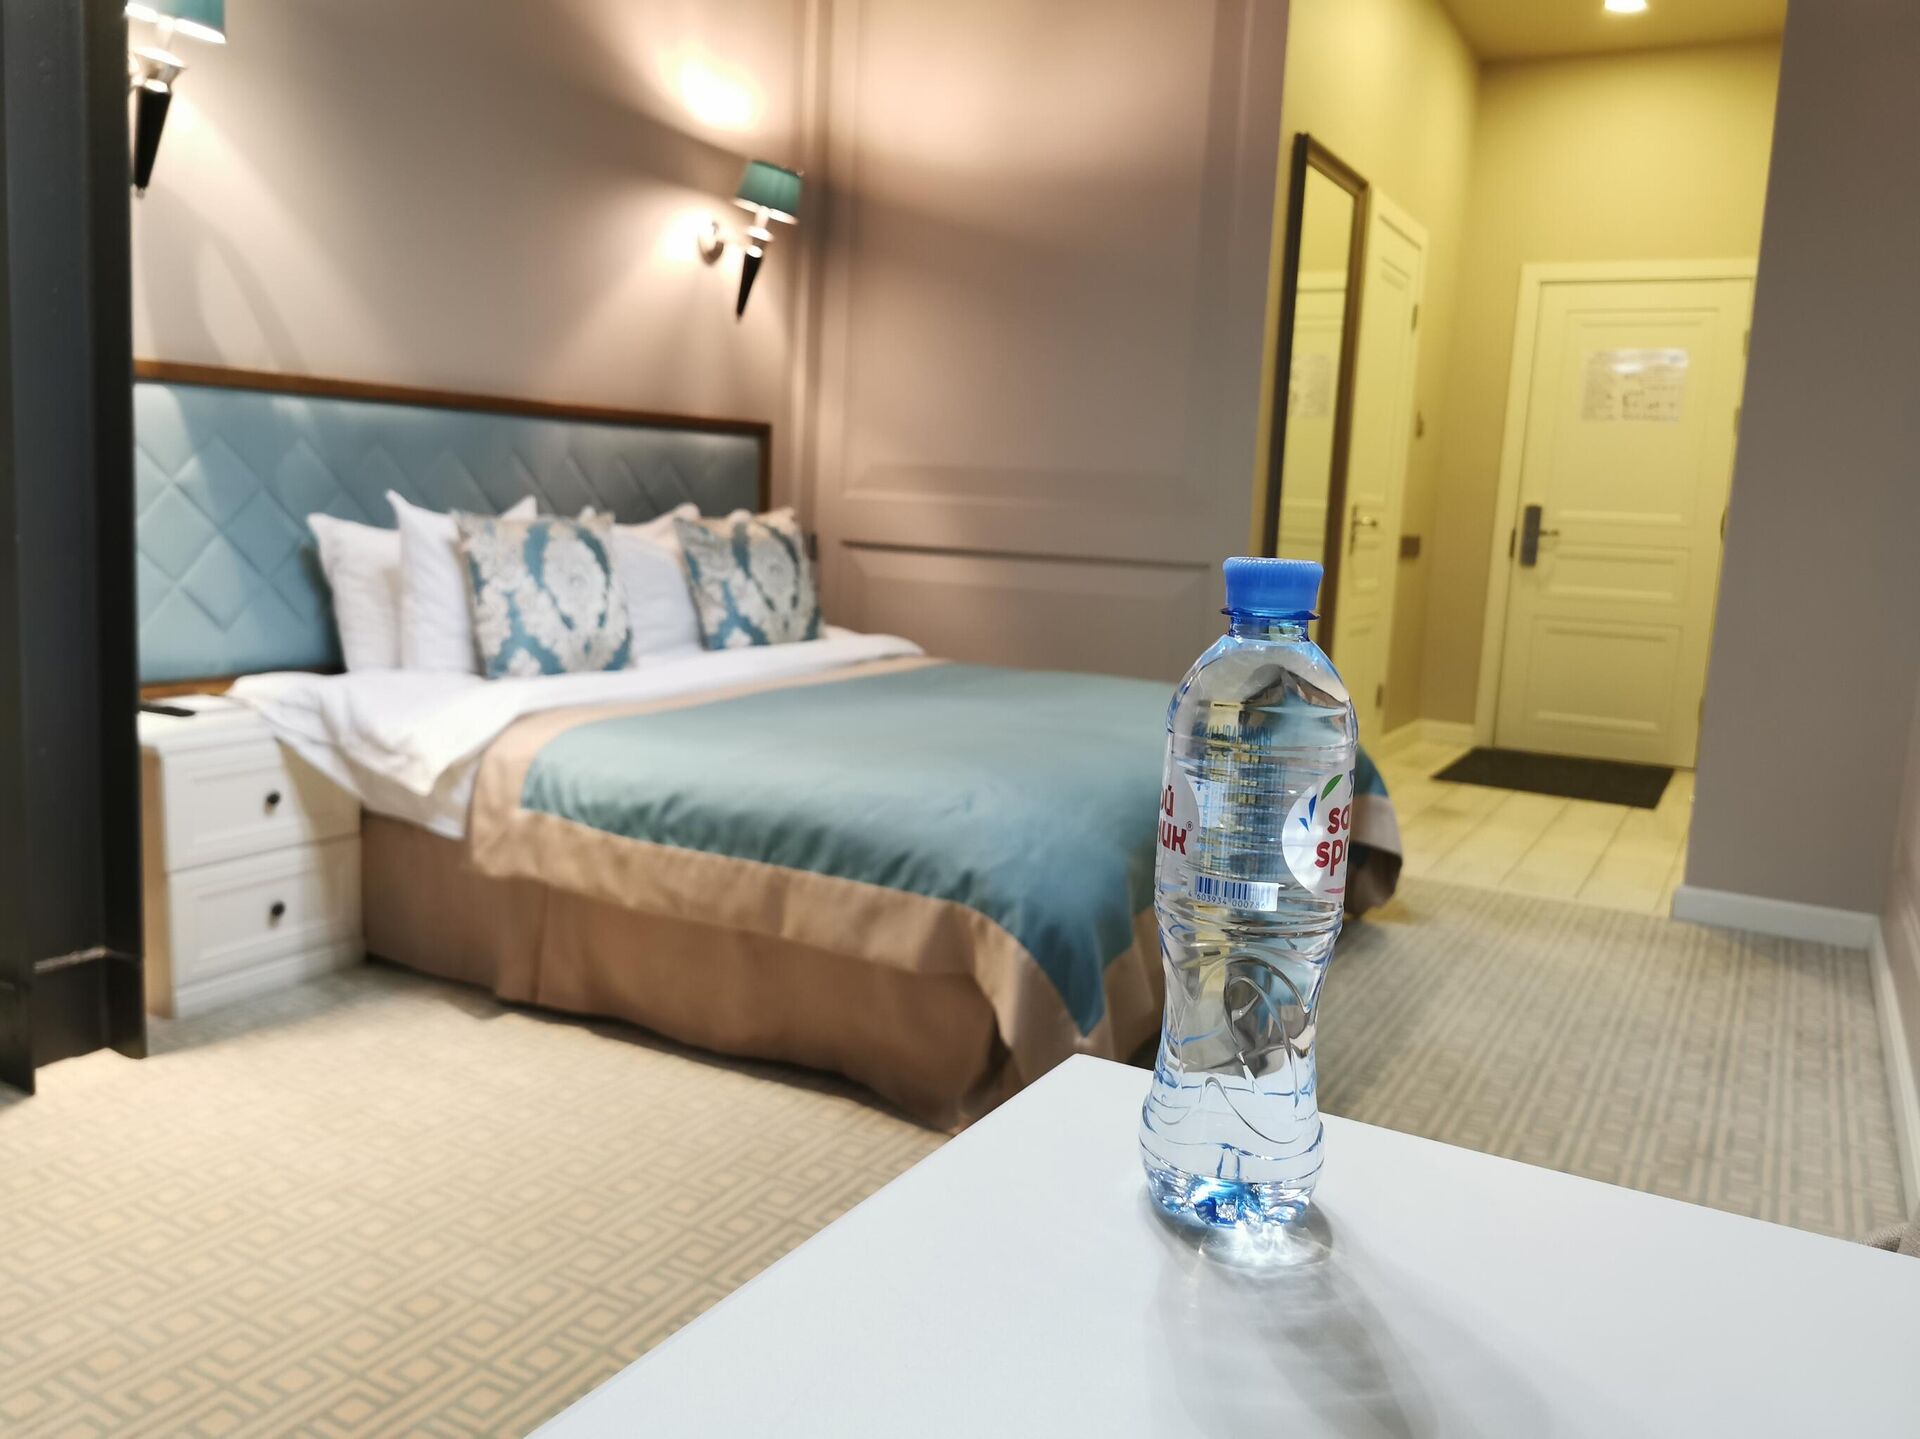 Бутылка воды на столике в номере 239 гостиницы Xander Hotel в Томске - РИА Новости, 1920, 21.09.2020